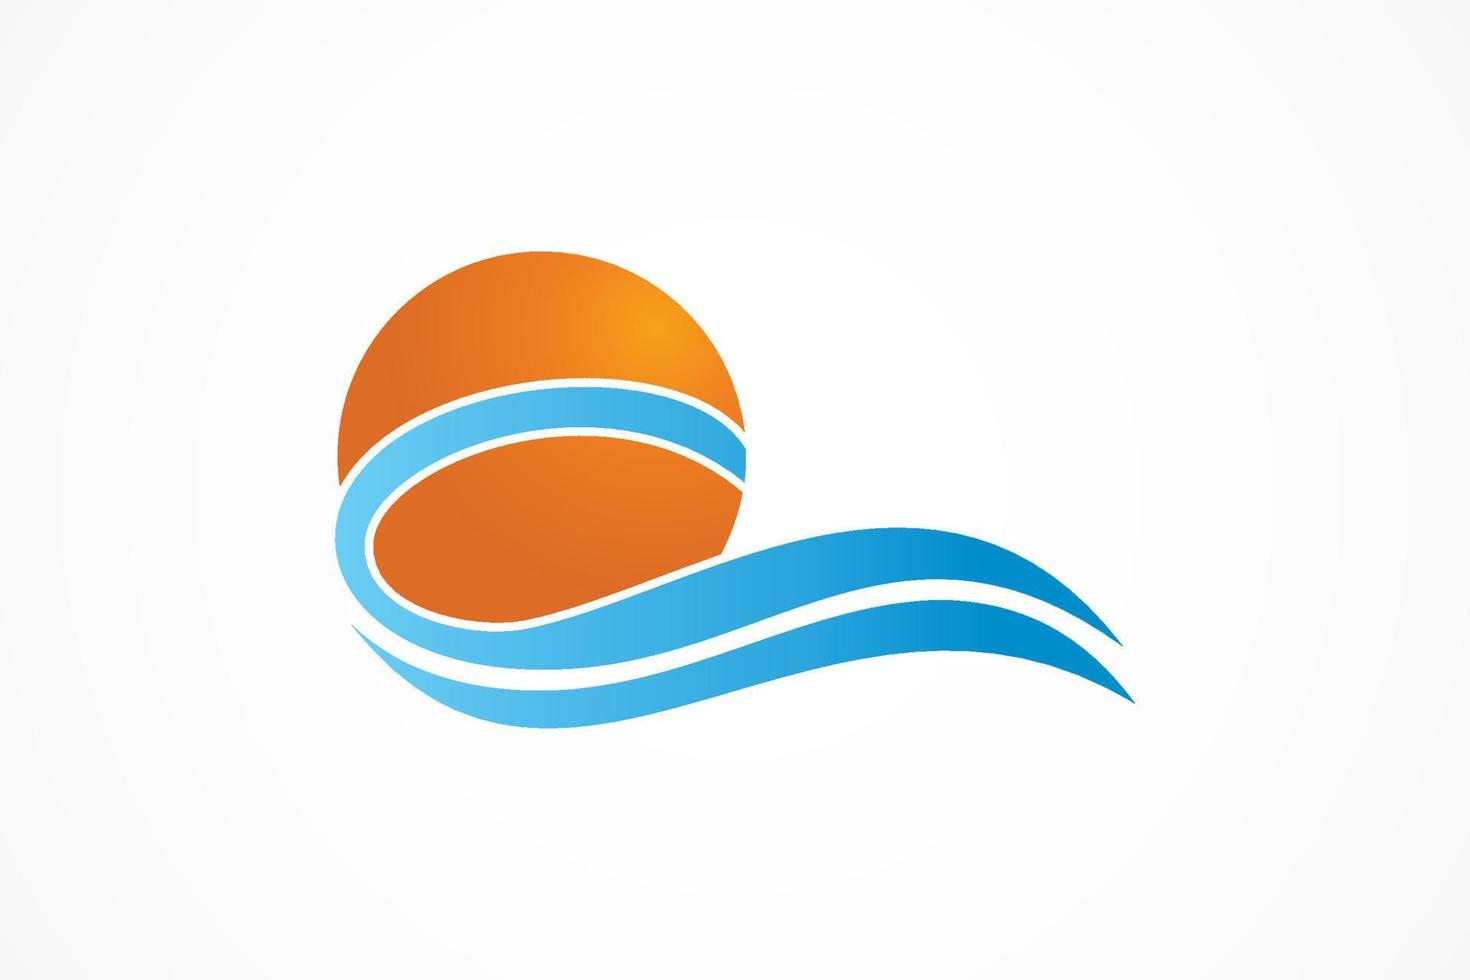 logotipo circular abstracto de sol y olas marinas. elemento de plantilla de diseño de logotipo de vector plano.